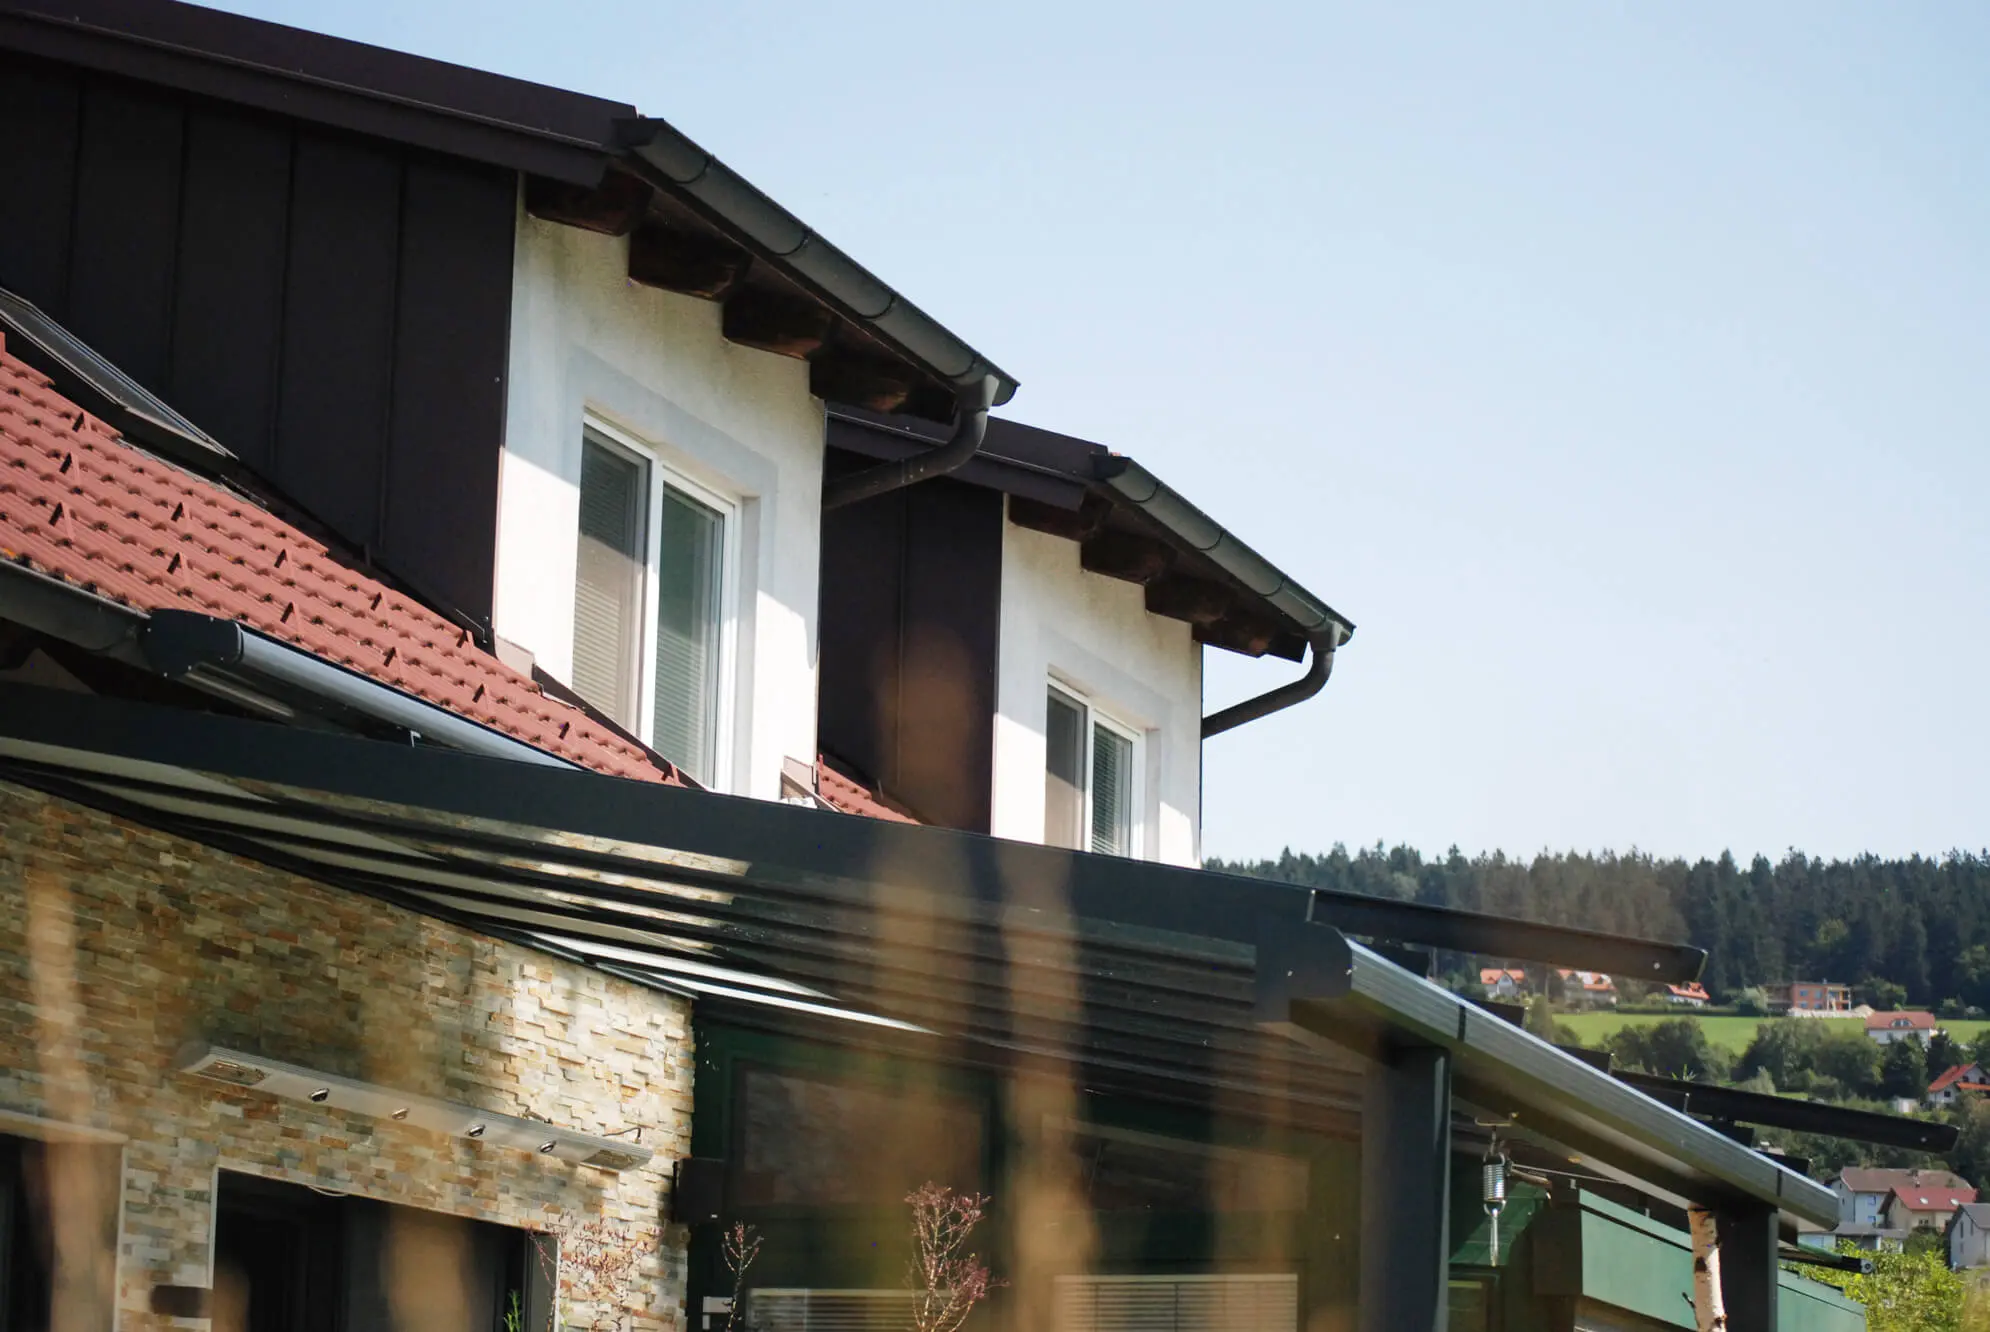 Beispielbilder einer Terrassenüberdachung mit Infrarot Heizstrahler an Wand montiert